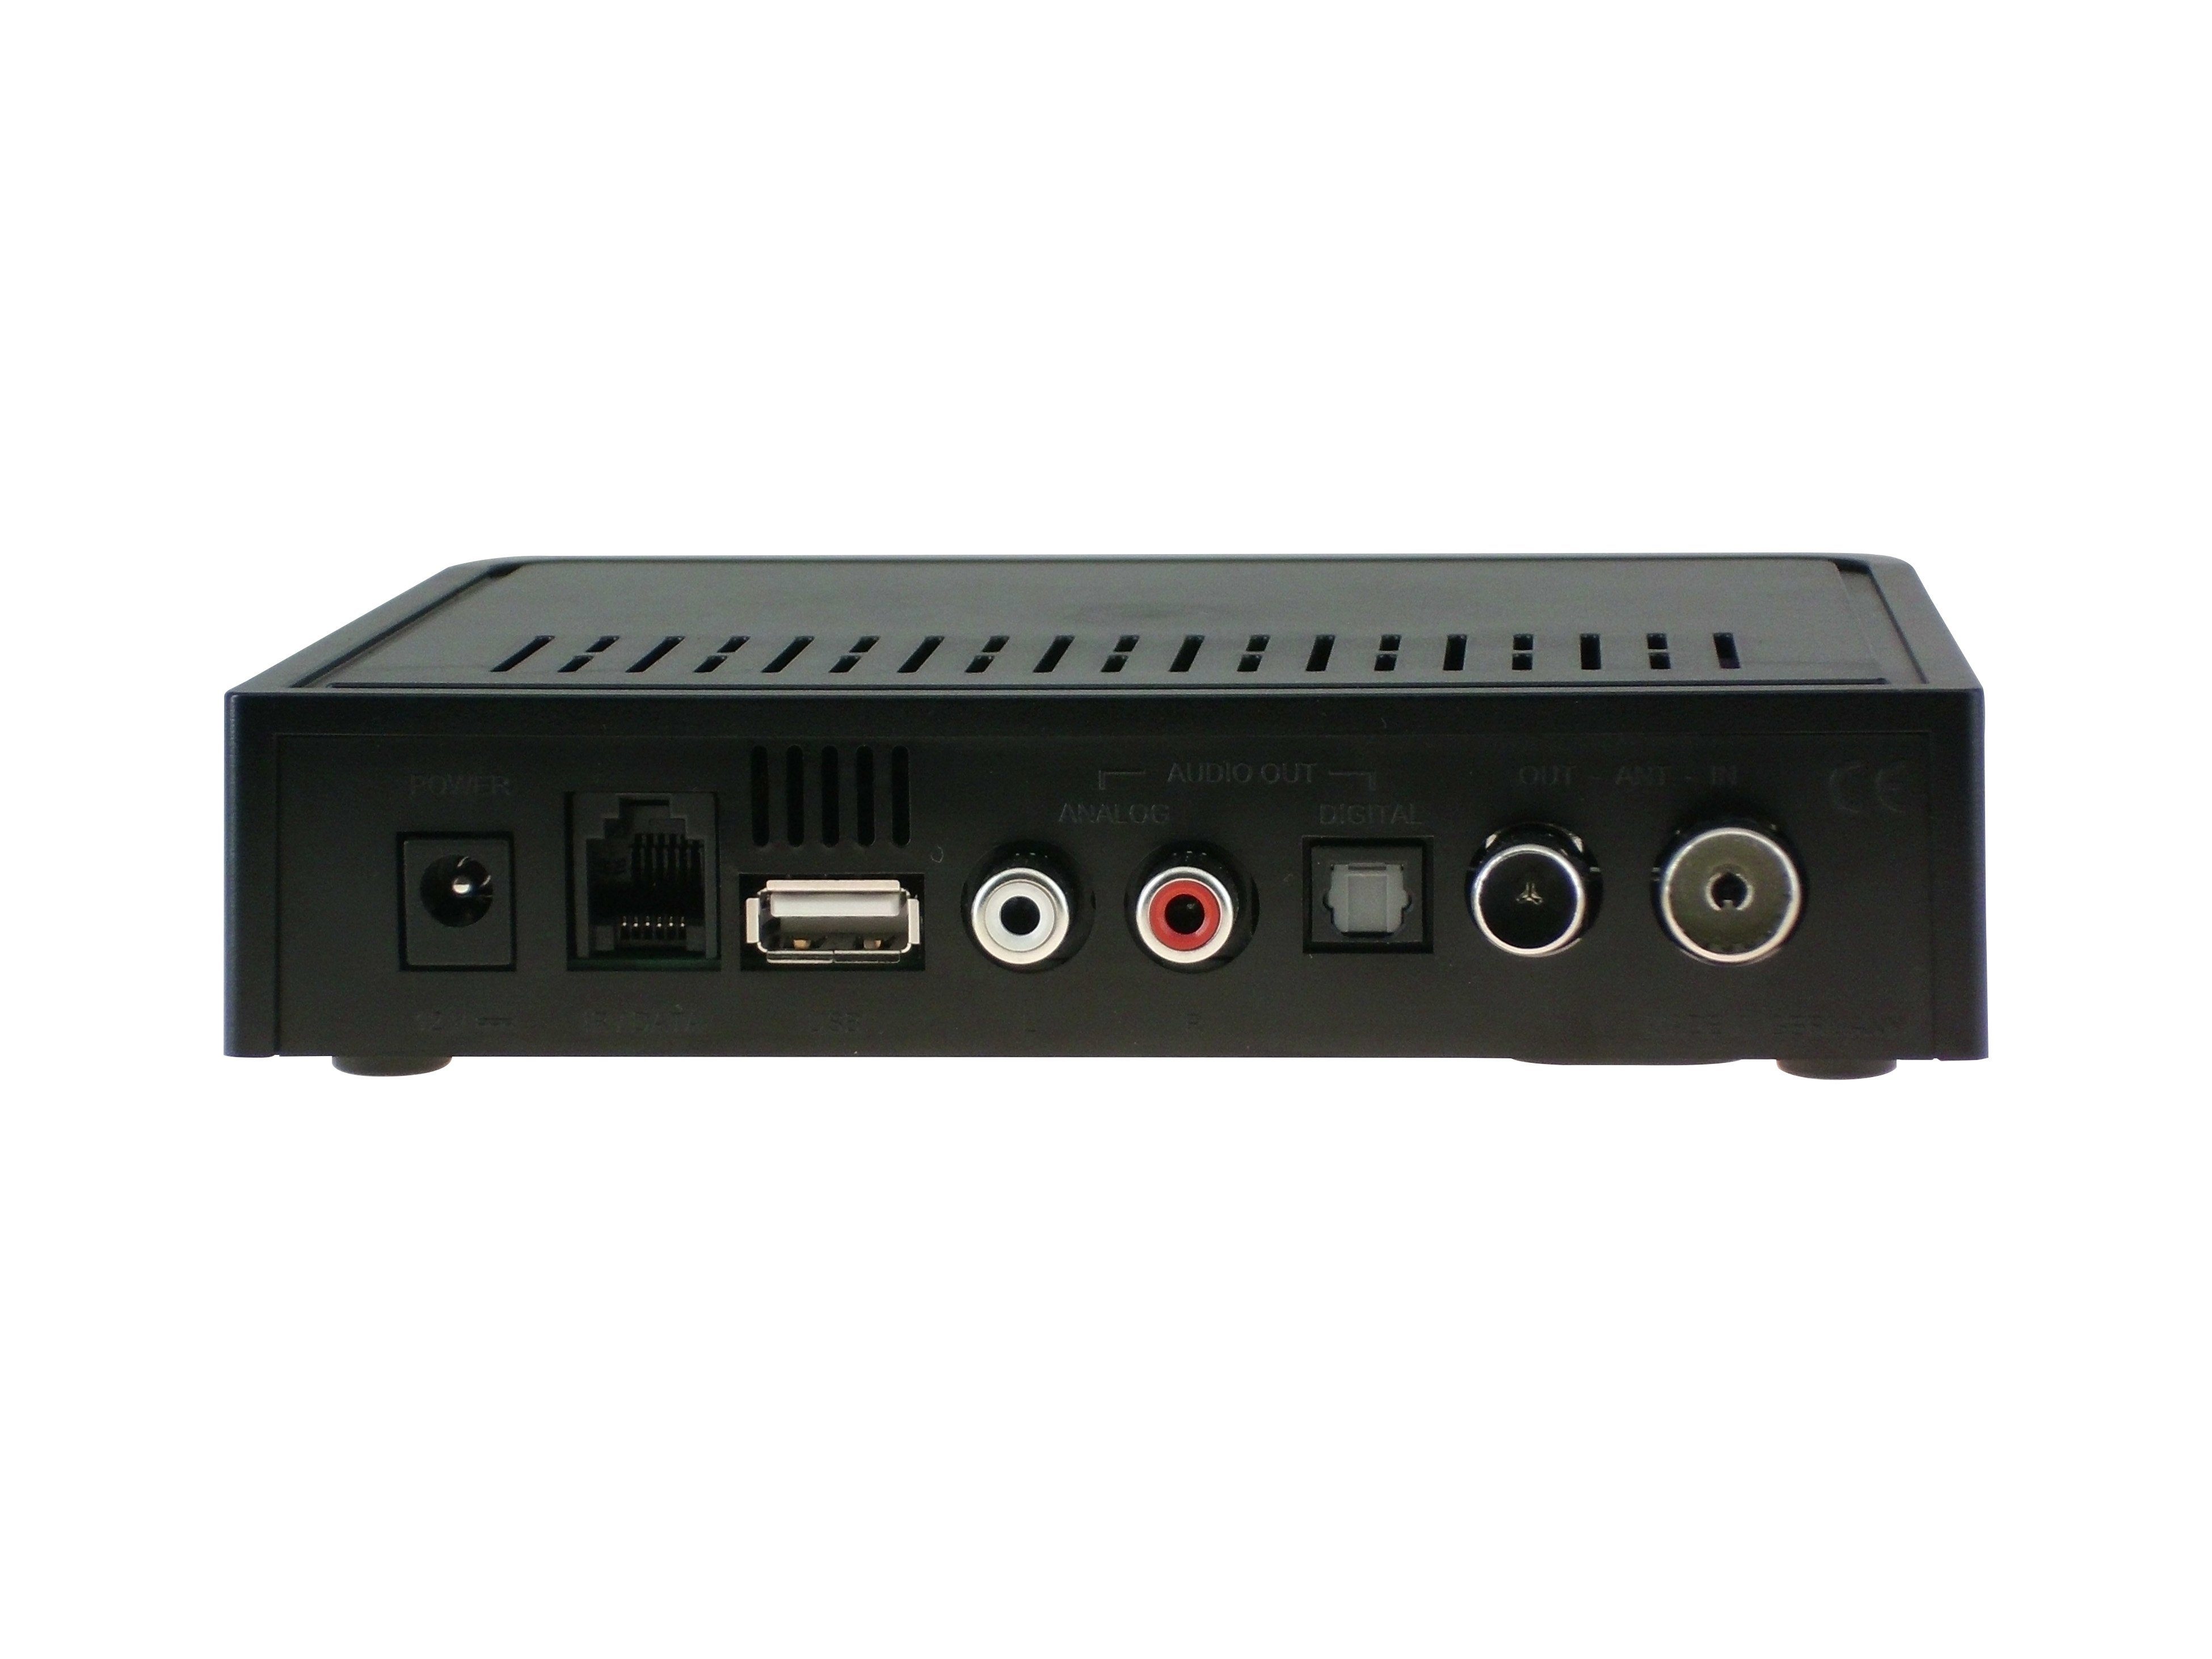 Tuner (DVB-C) IN) Stereoanlagen, (für Toslink, VT855-N Vistron ANT Audio Kabelradio R/L,